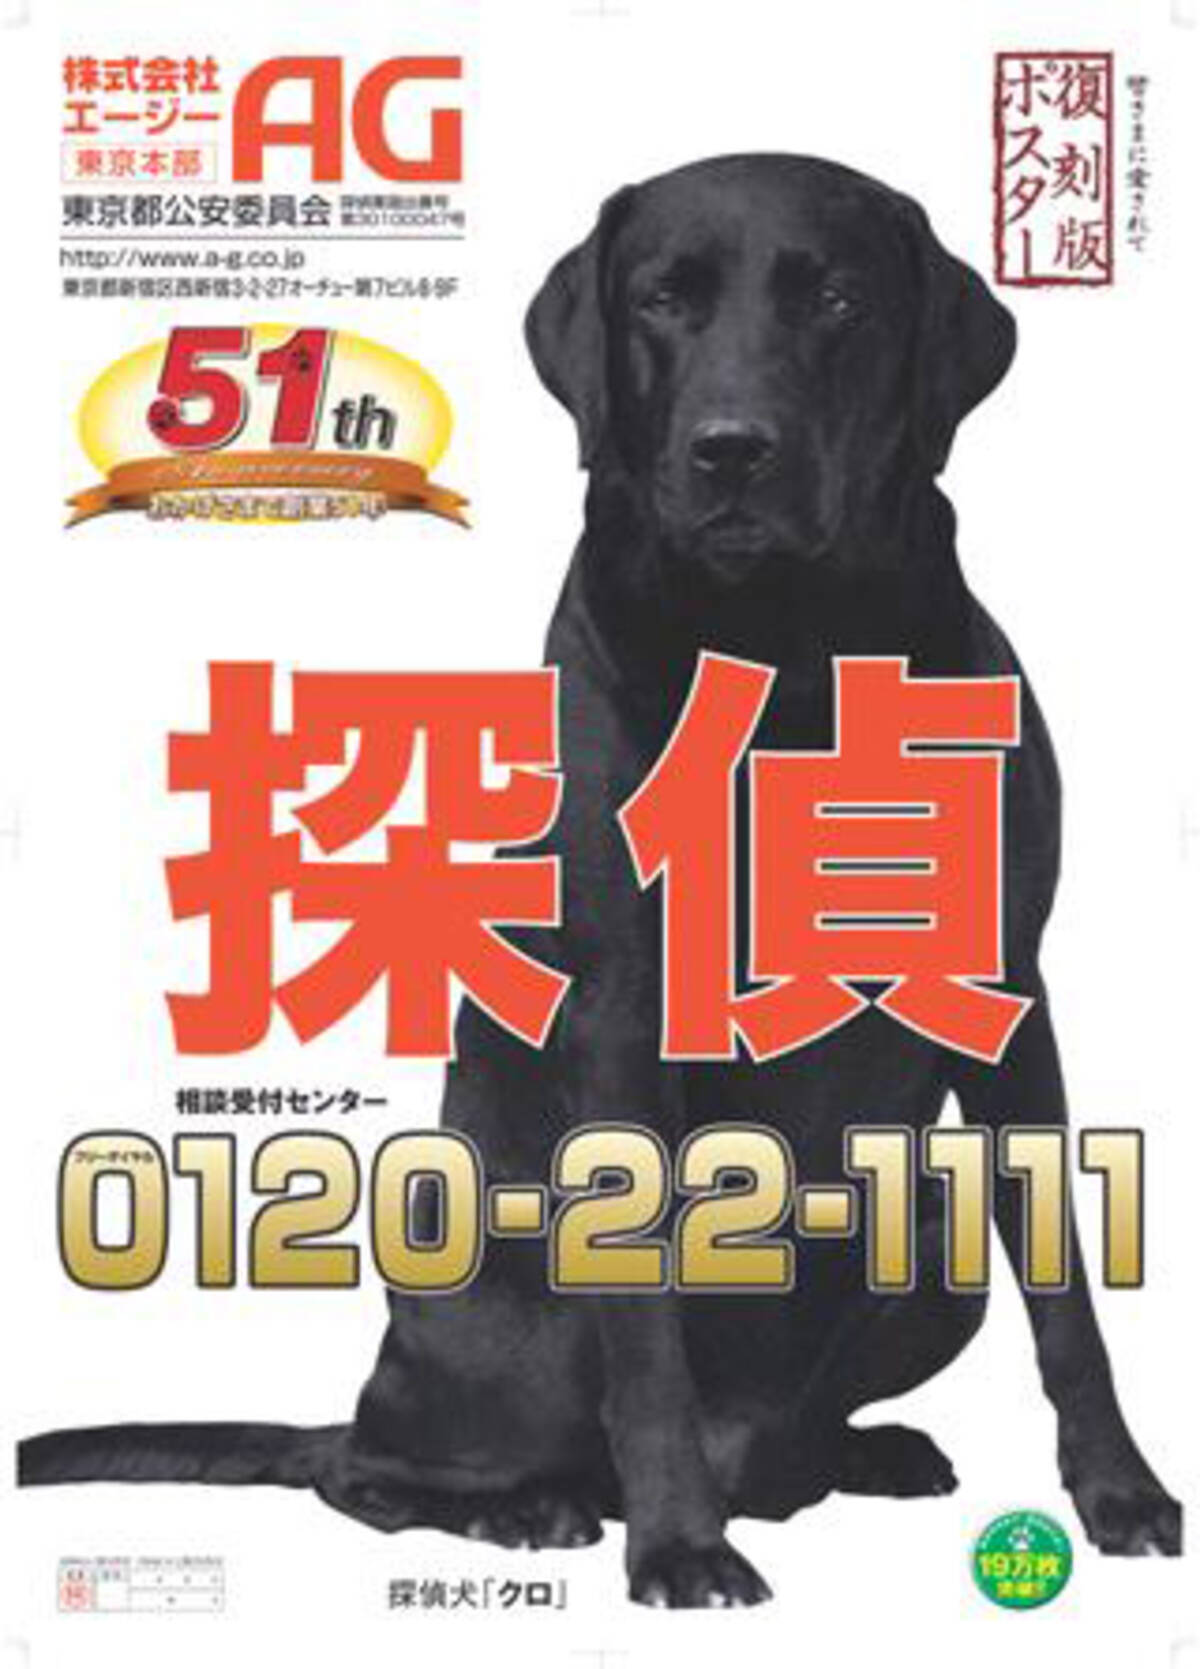 探偵社のポスターの黒犬に迫る エキサイトニュース